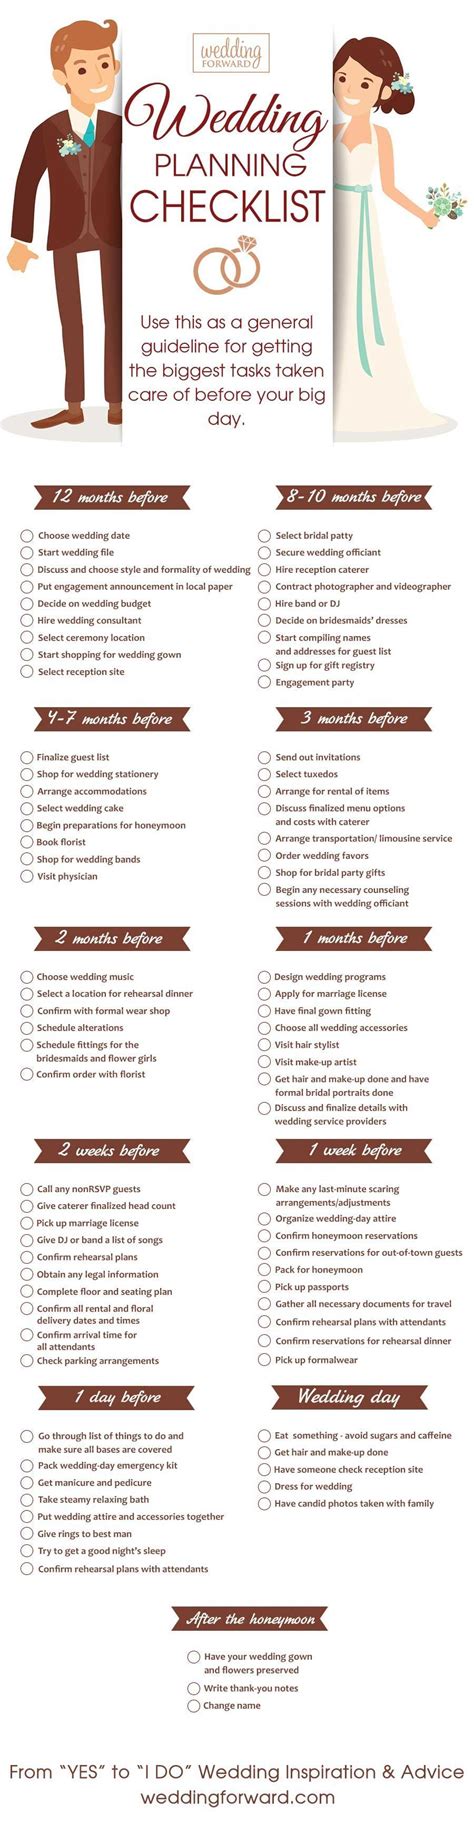 Wedding Planning Checklist Timeline 26 Best Wedding Planning Timelines